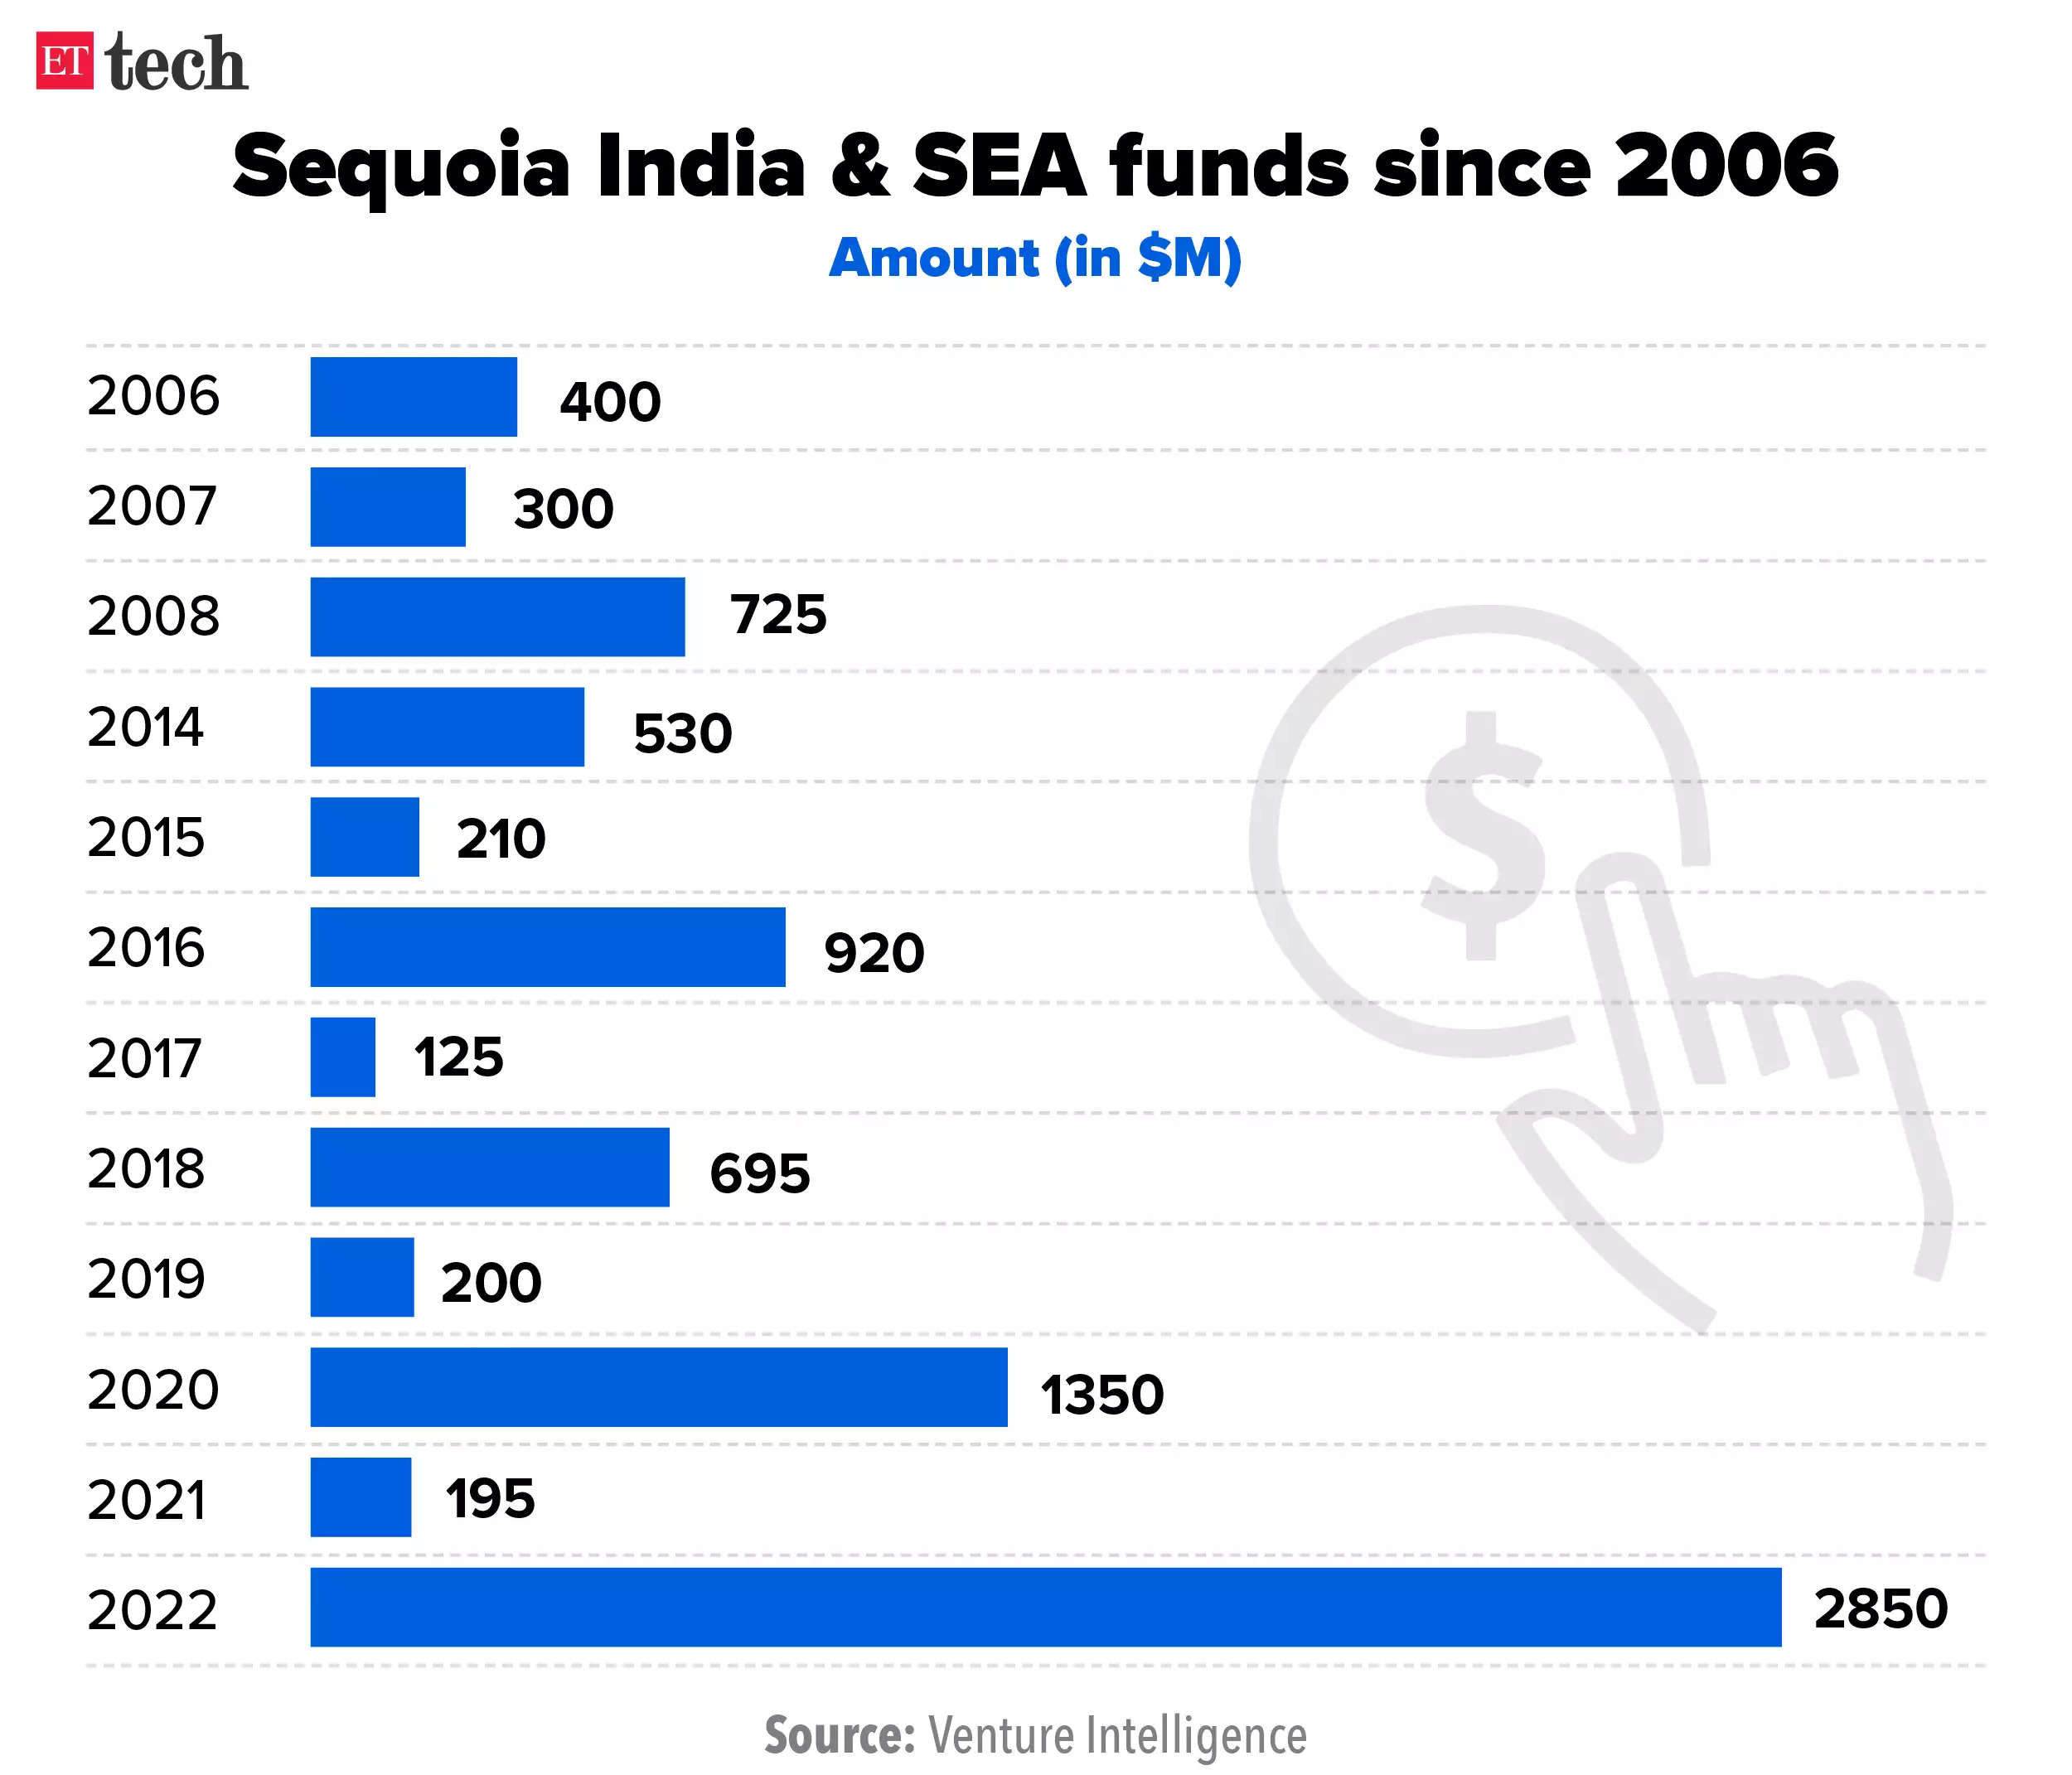 Sequoia India funds